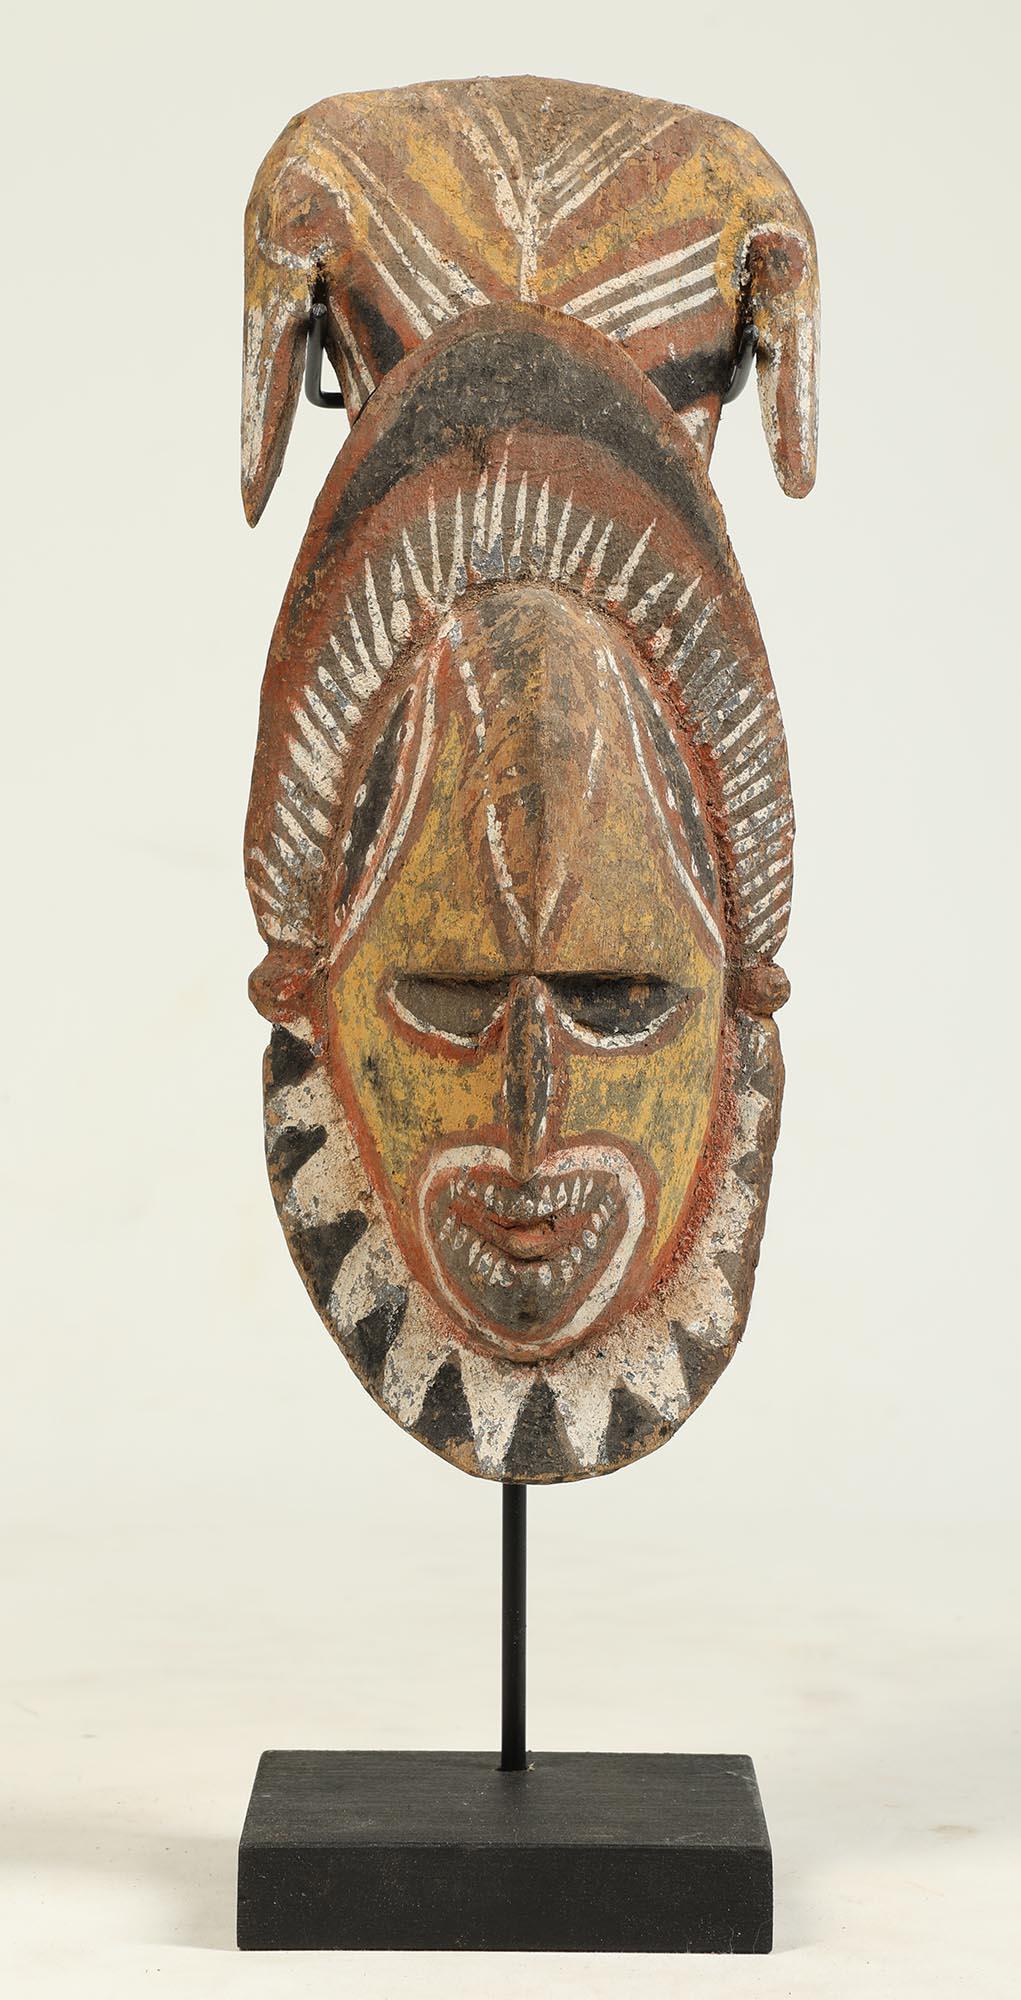 En provenance de Papouasie-Nouvelle-Guinée, une sculpture de tête ou un masque en bois sculpté Maprik, très tôt peint, avec une expression intense montrant les dents, et deux oiseaux stylisés opposés sur le dessus. Milieu du XXe siècle. Pigments